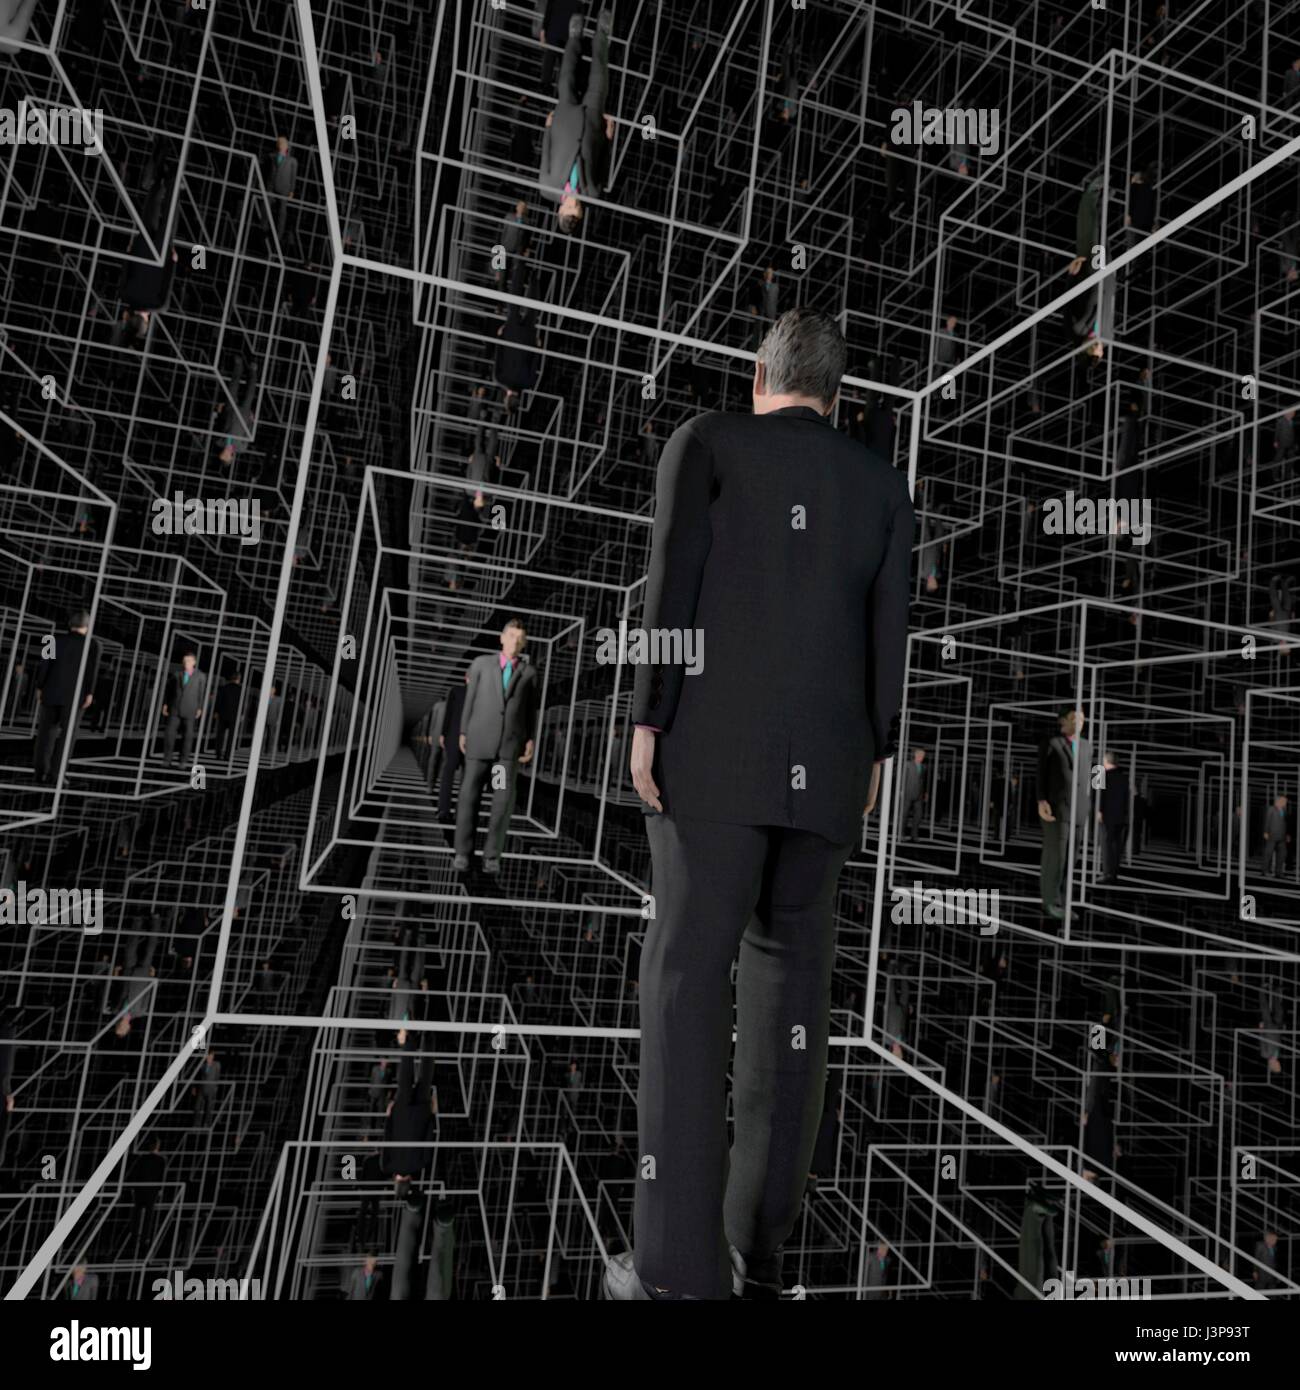 Identische Männer in eine Matrix-Struktur der Kabinen, schien endlos zu sein. Full-CGI (einschließlich menschliche Figuren) Stockfoto